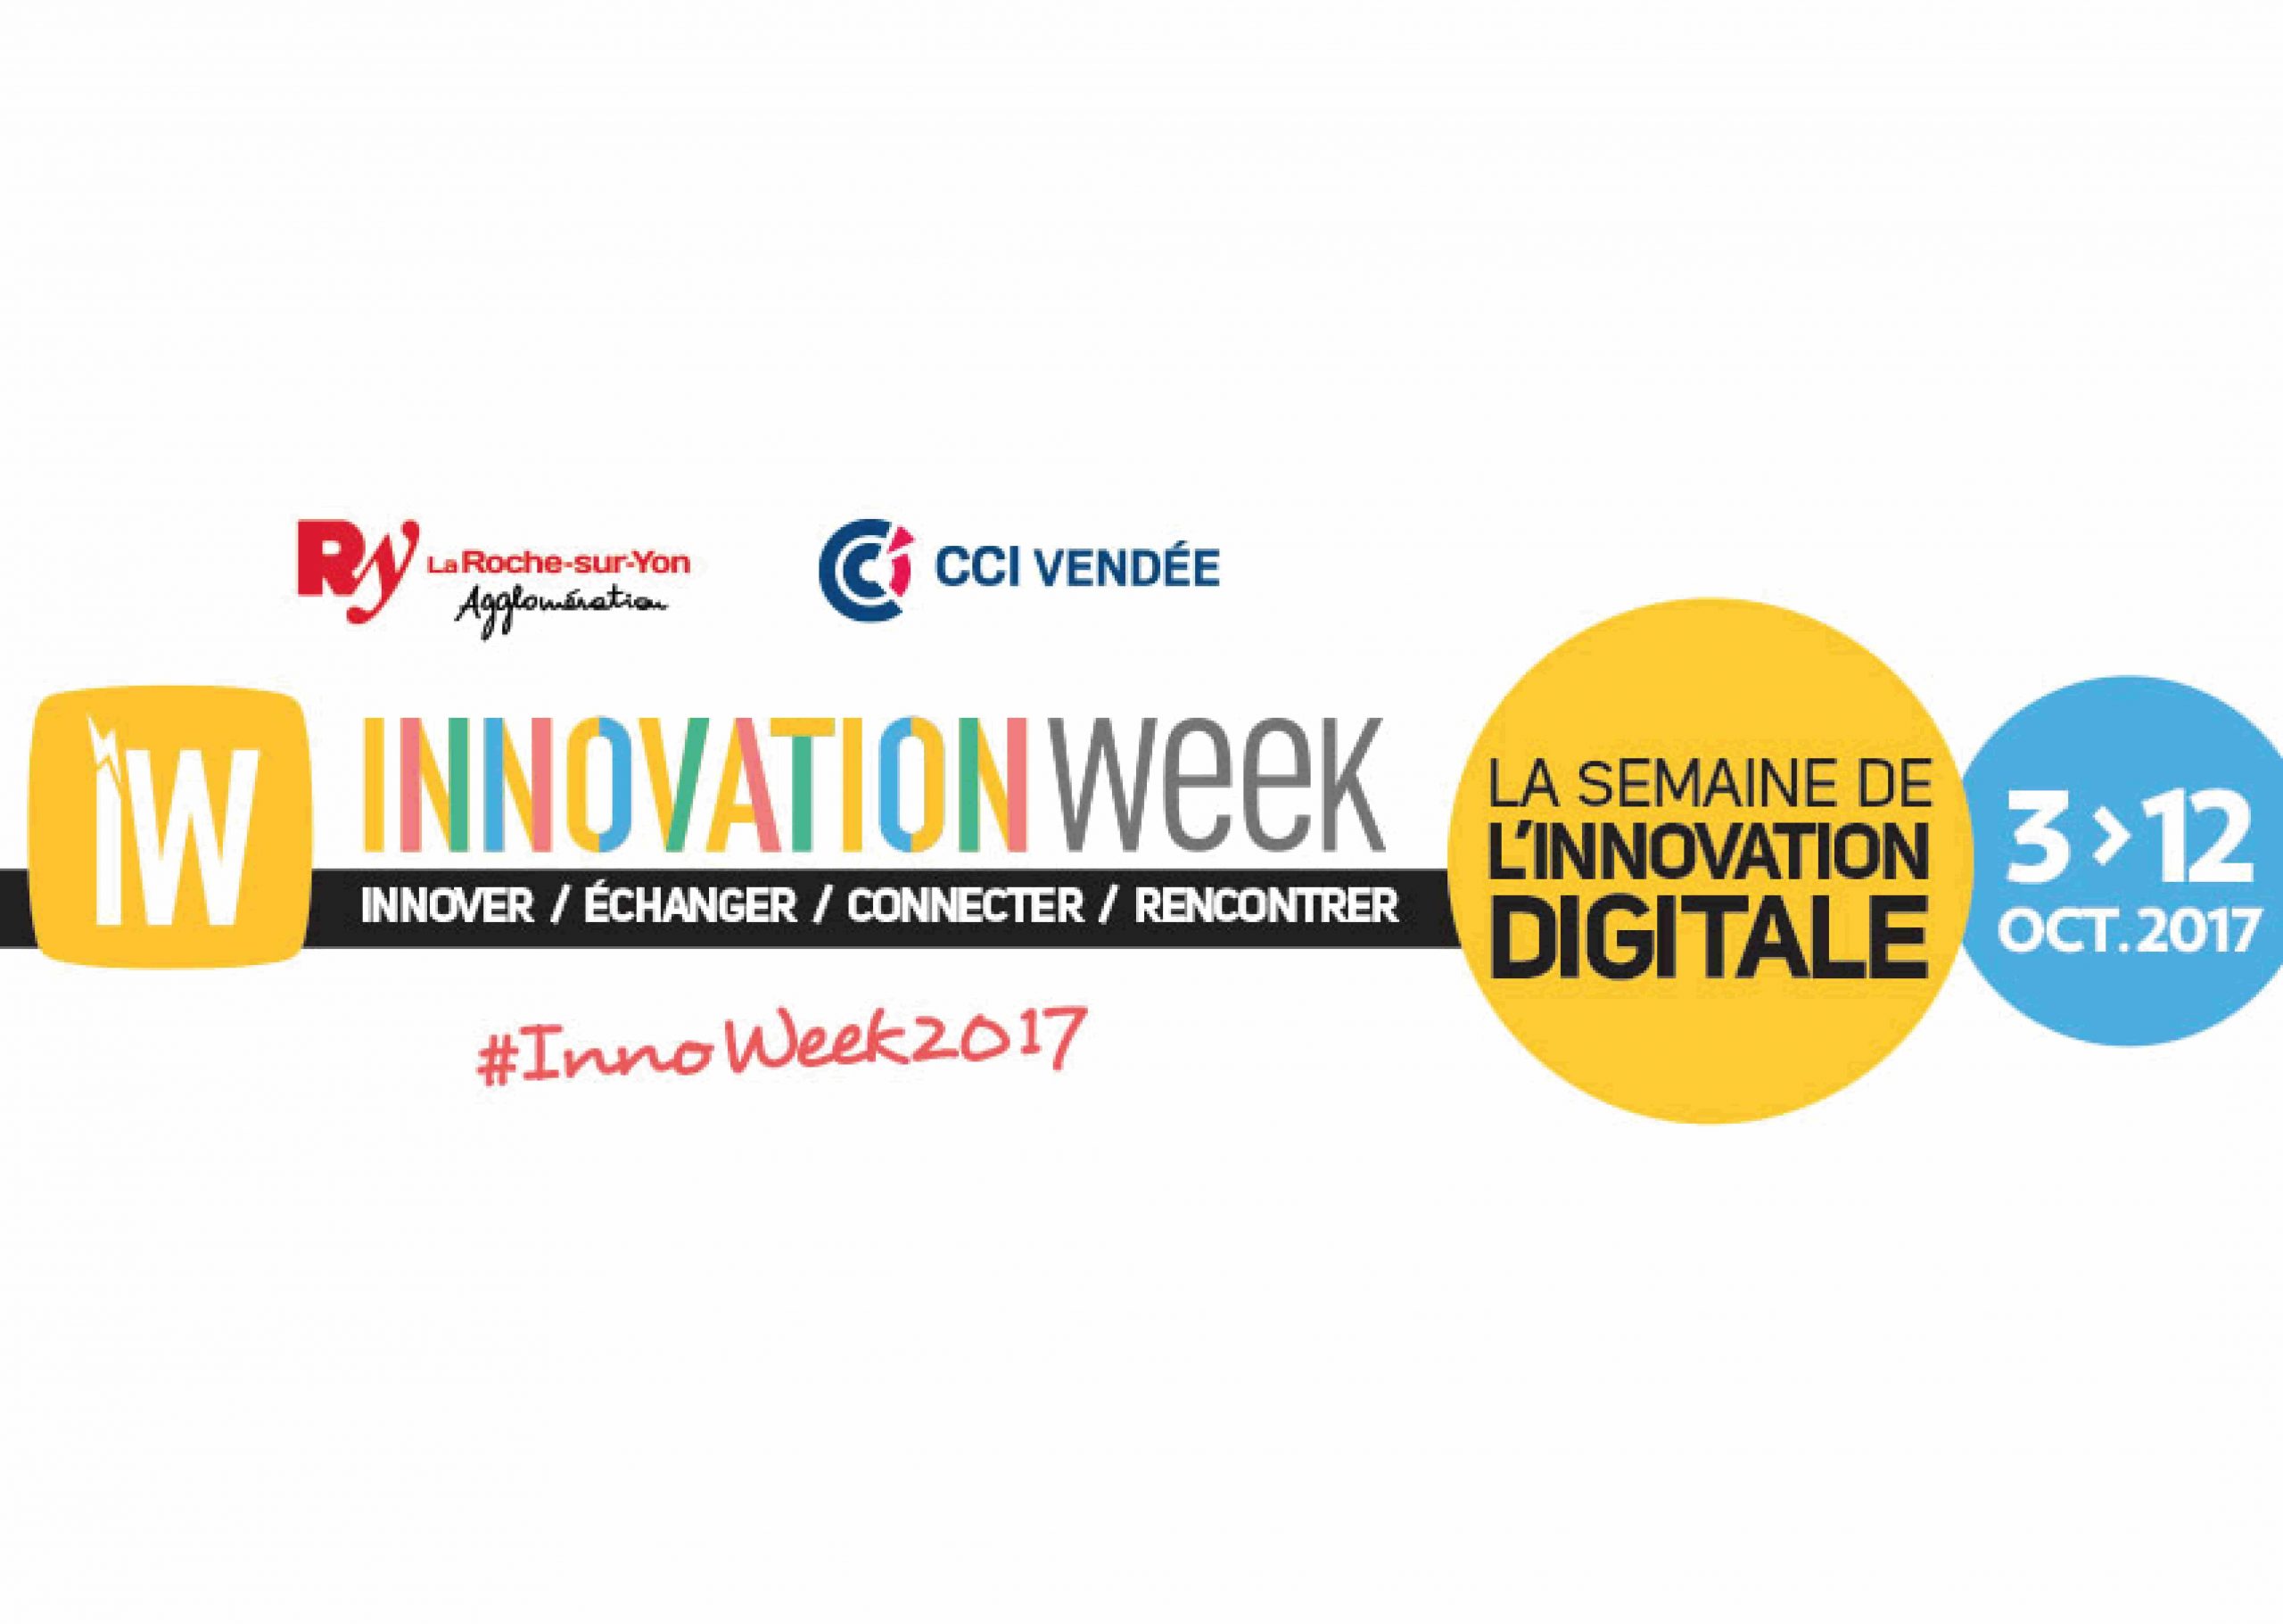 Participez à l’Innovation Week à La Roche-sur-Yon 2017